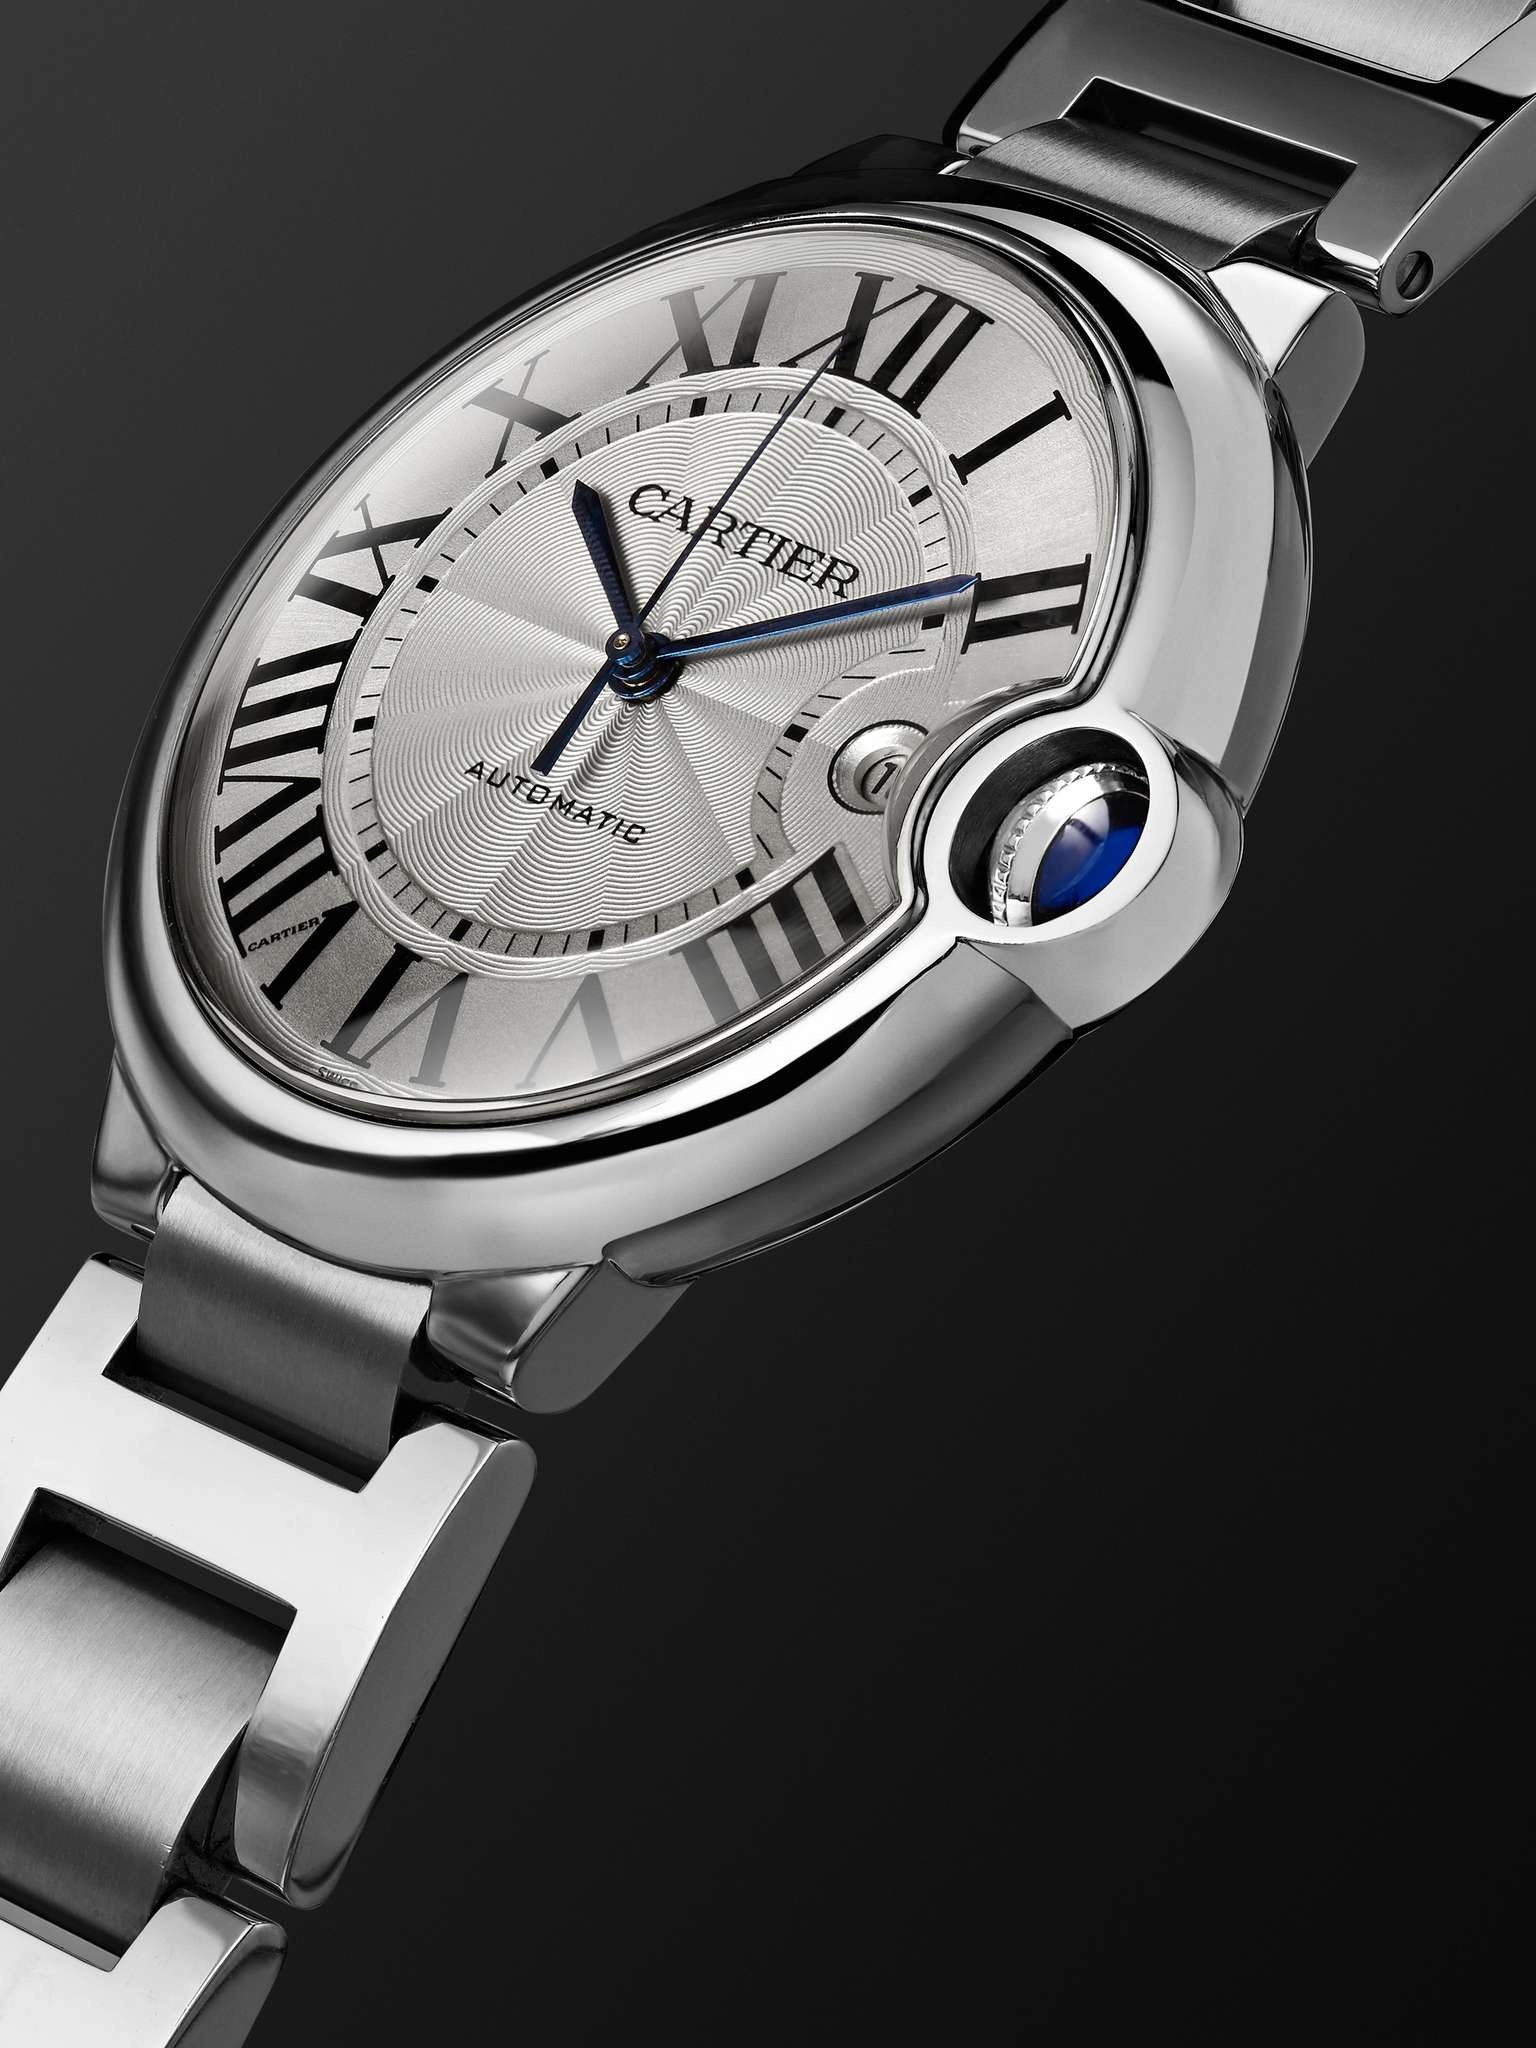 Ballon Bleu de Cartier Automatic 42mm Stainless Steel Watch, Ref. No. CRW69012Z4 - 4